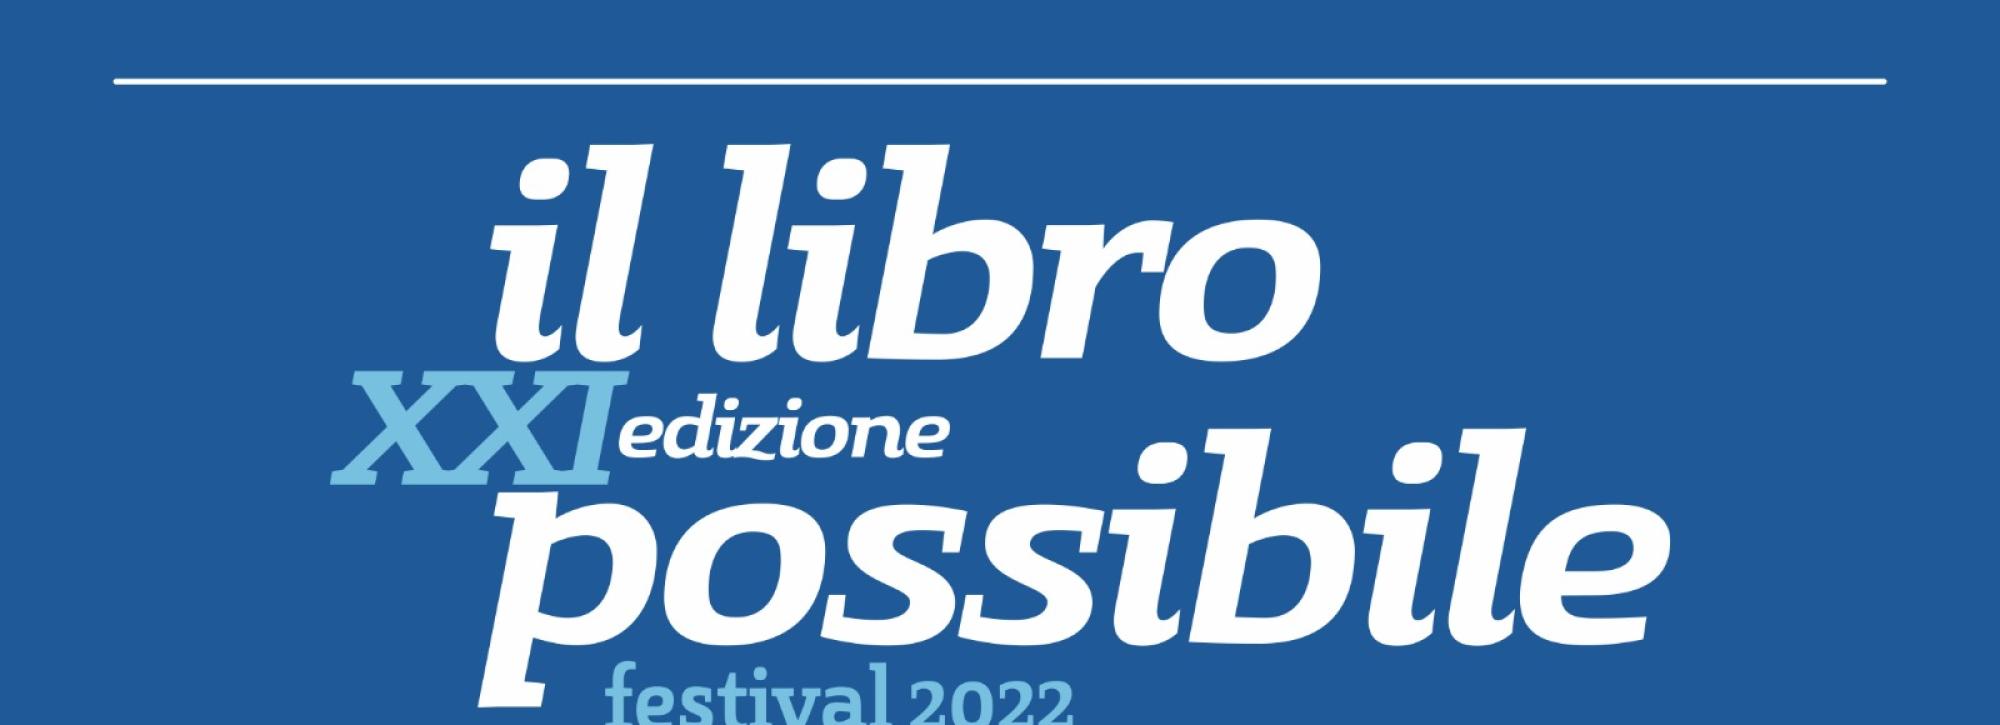 The Libro Possibile Festival returns to Polignano a Mare.